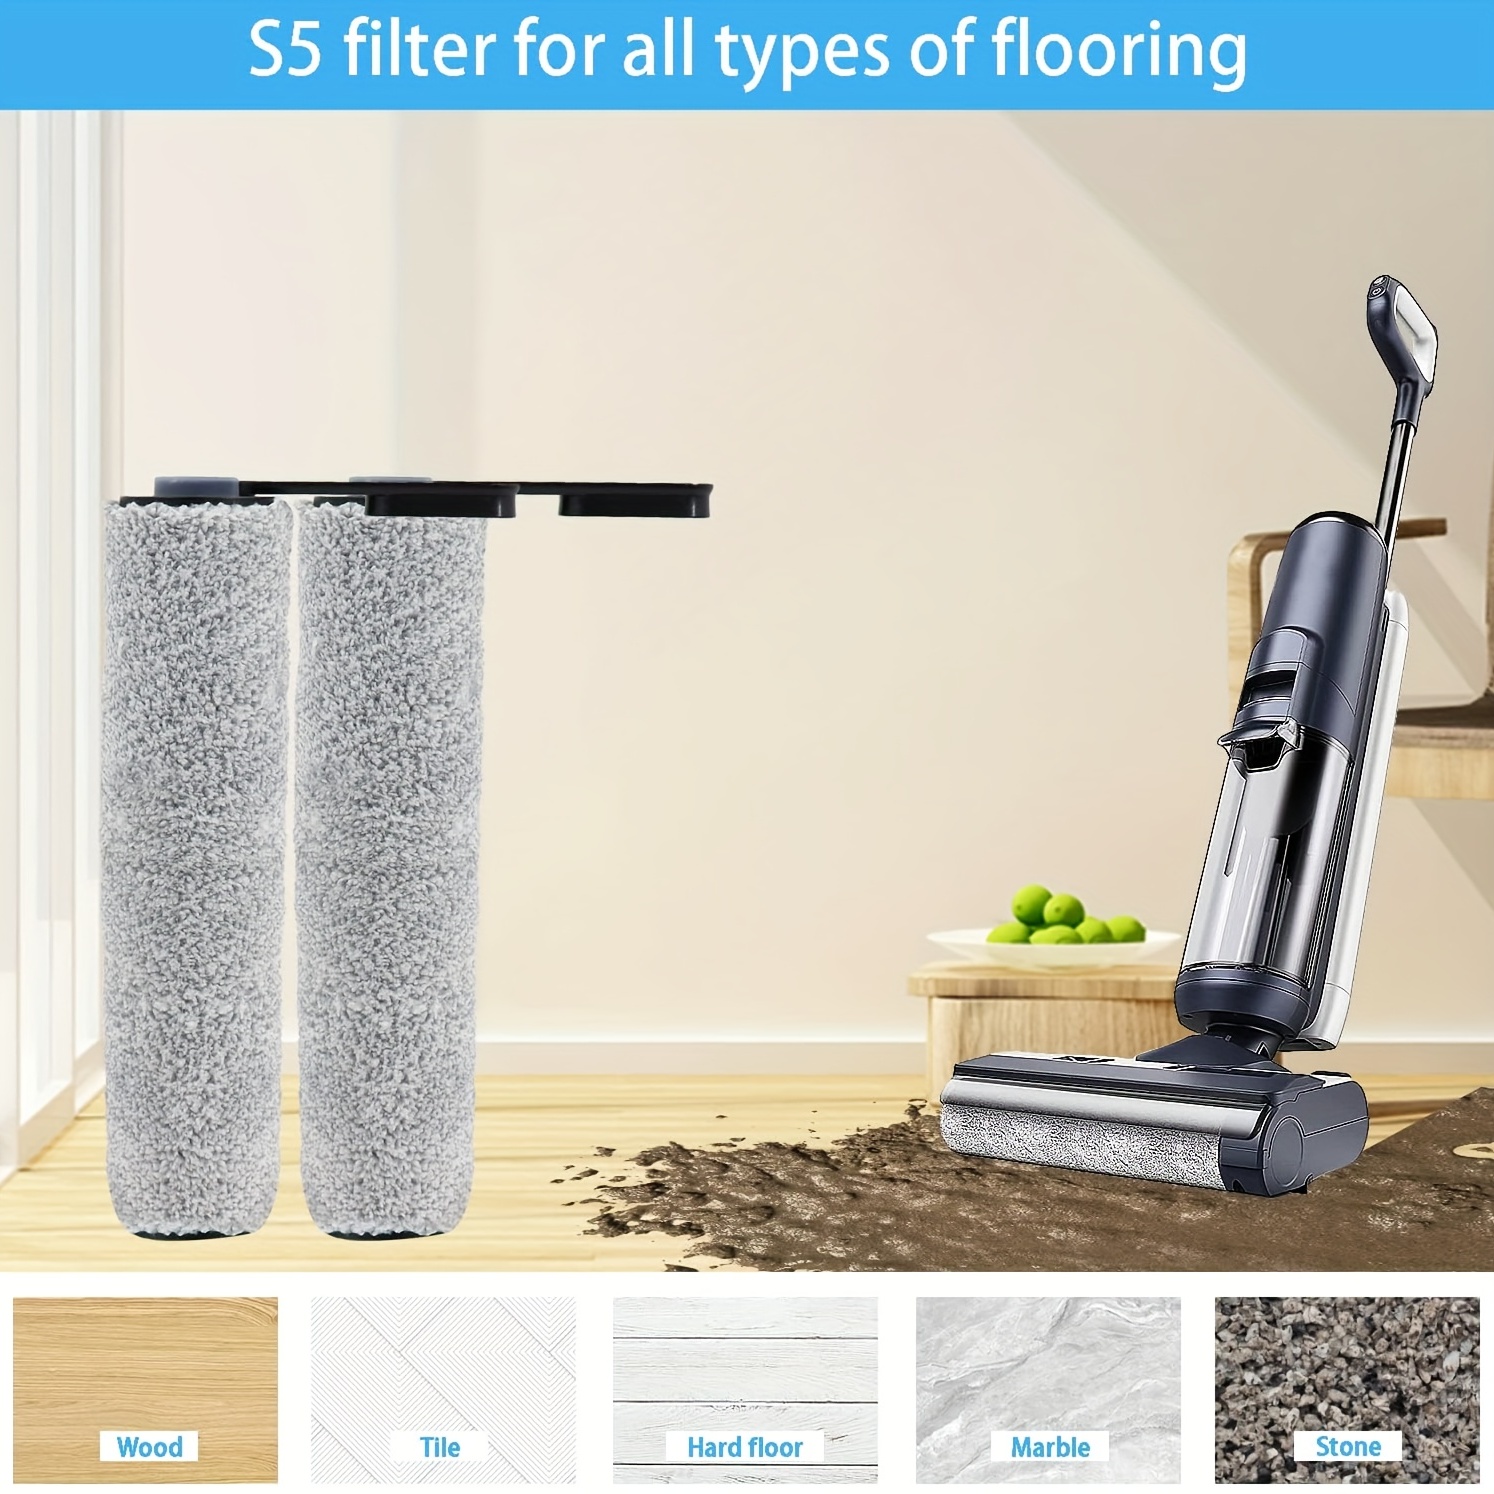 Buy Tineco FLOOR ONE S5 PRO Hard Floor Cleaner